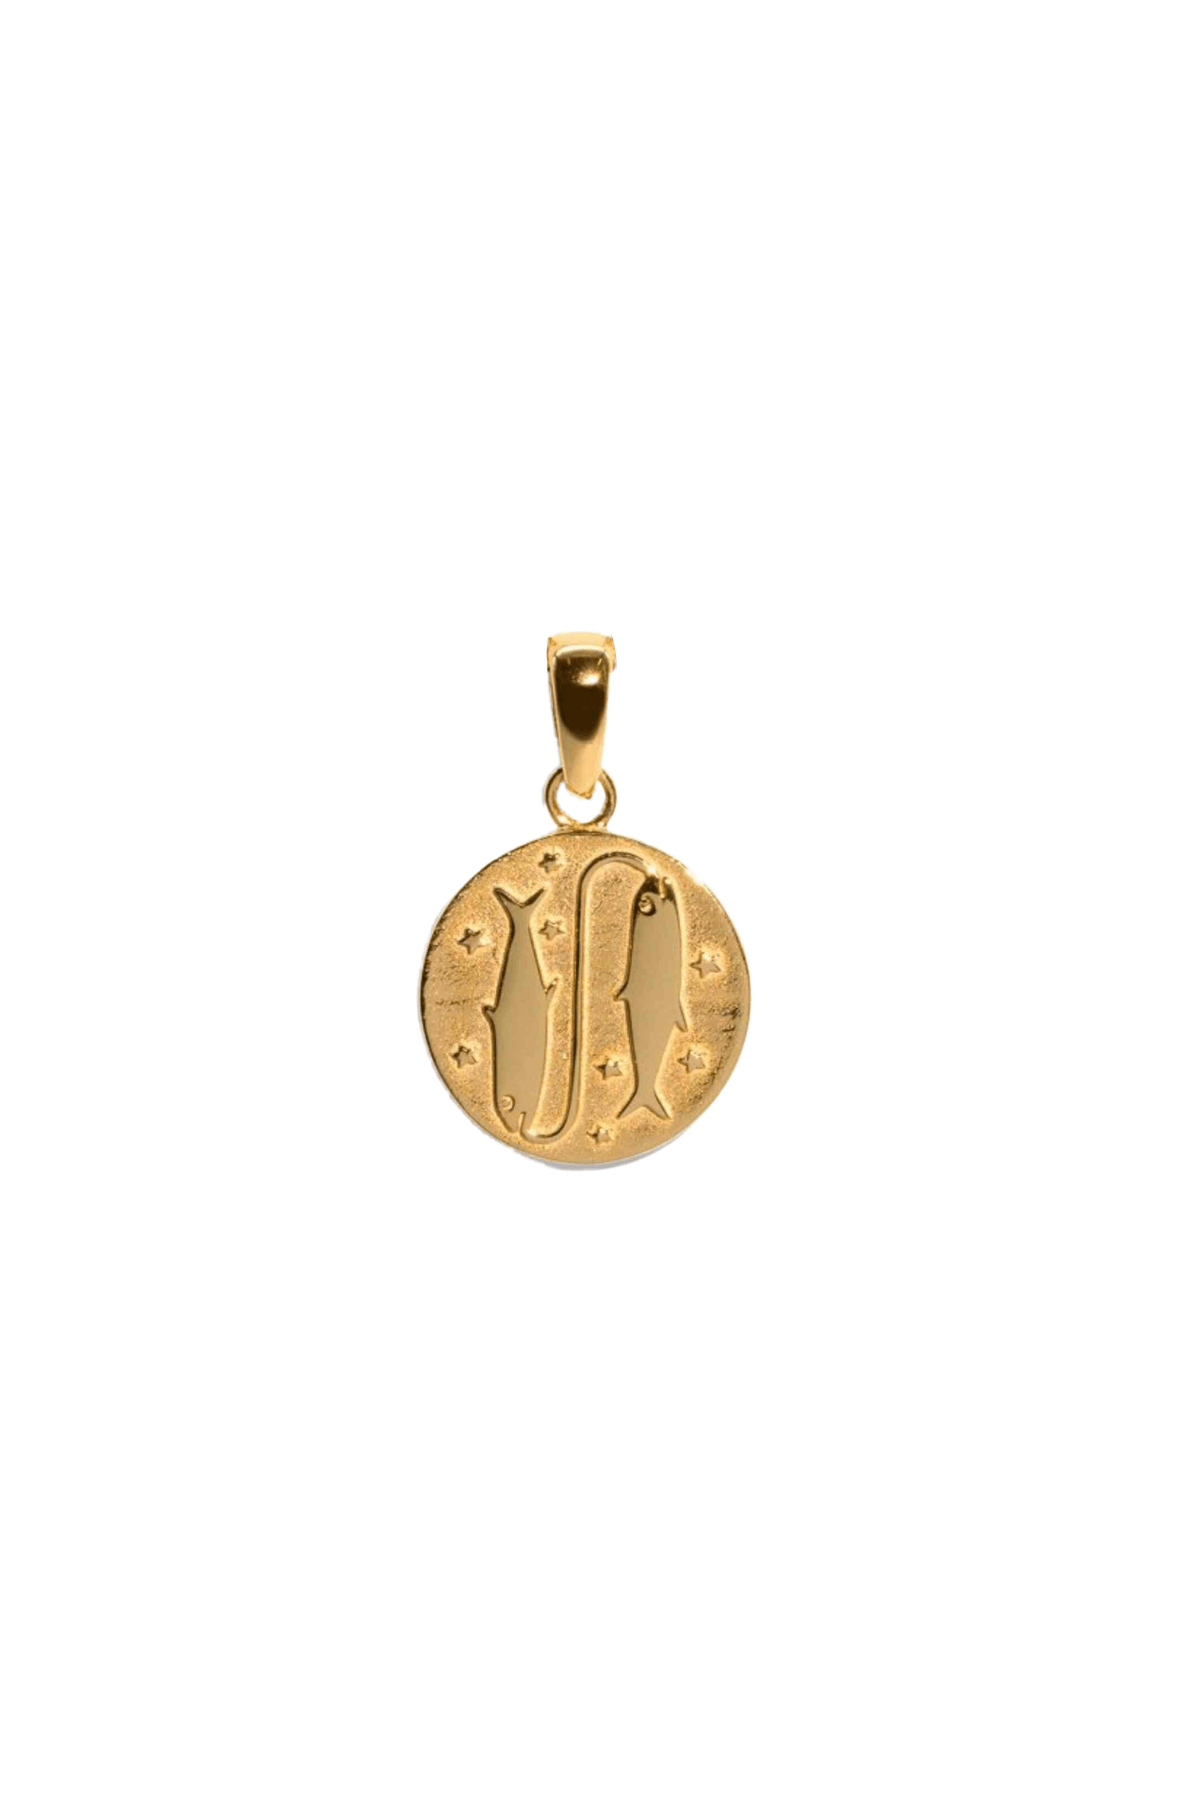 The Gold Pisces Zodiac Pendant